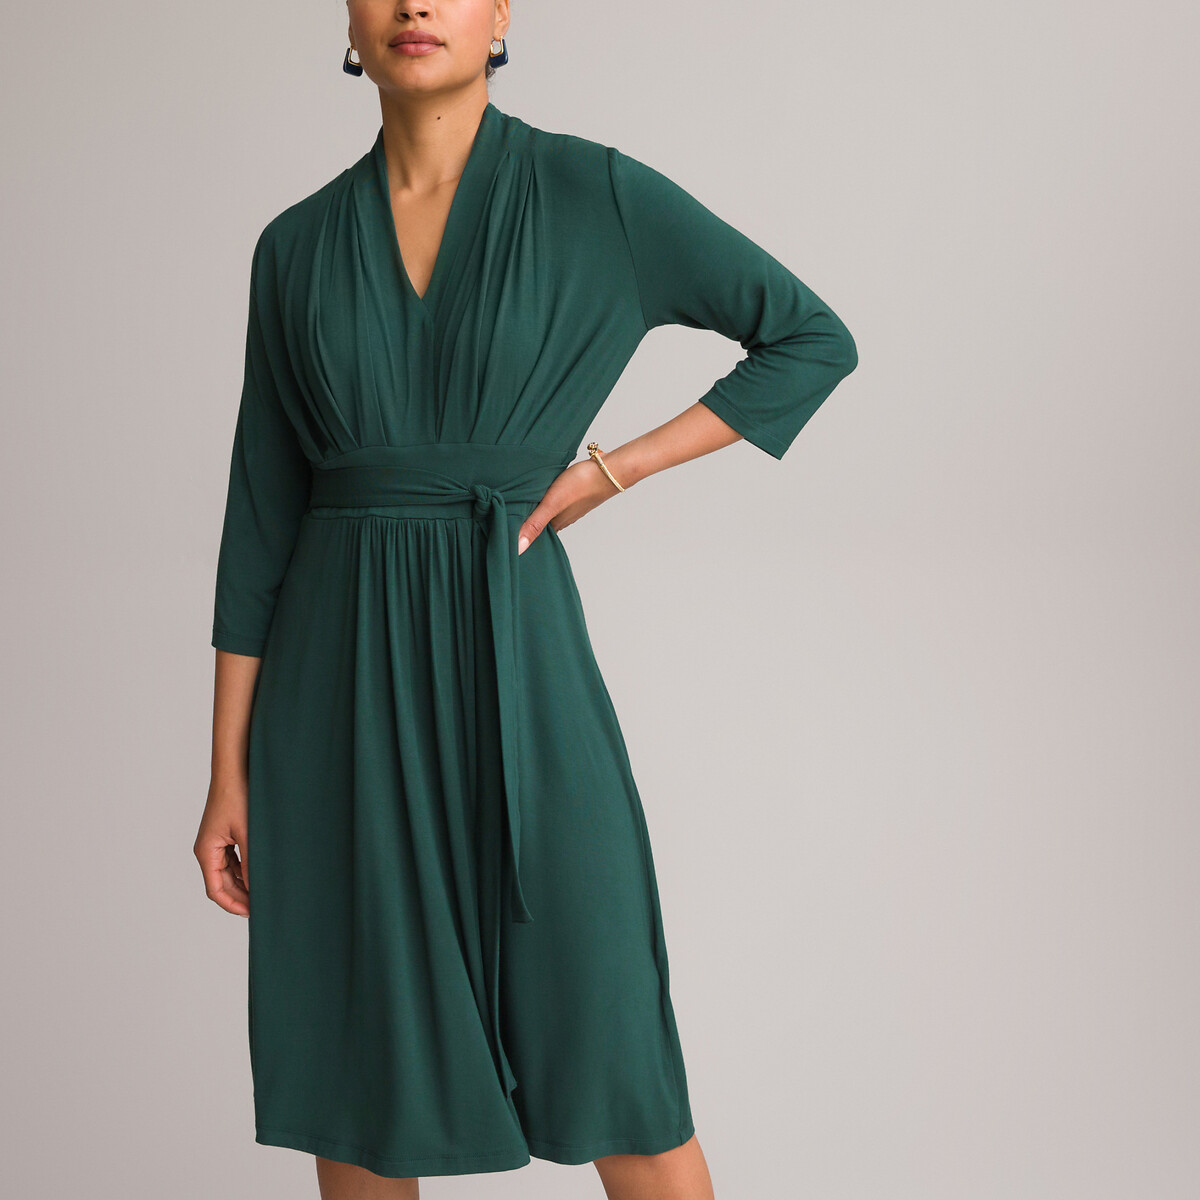 Платье ANNE WEYBURN Платье Расклешенное из струящегося трикотажа с рукавами 34 46 зеленый, размер 46 - фото 2